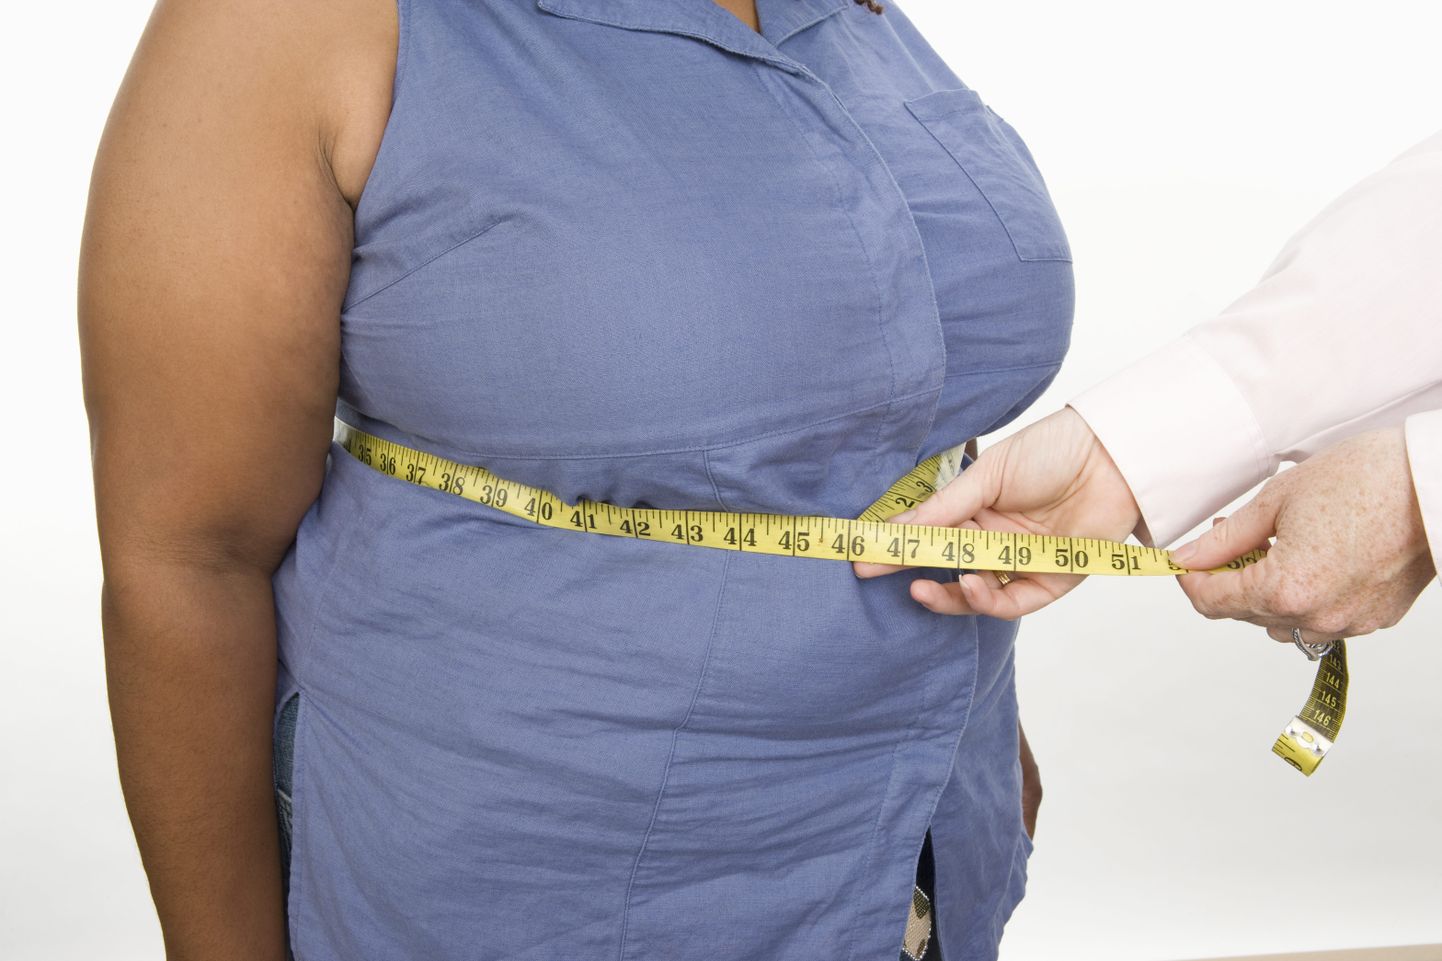 Женщина с лишним весом, фото иллюстративное